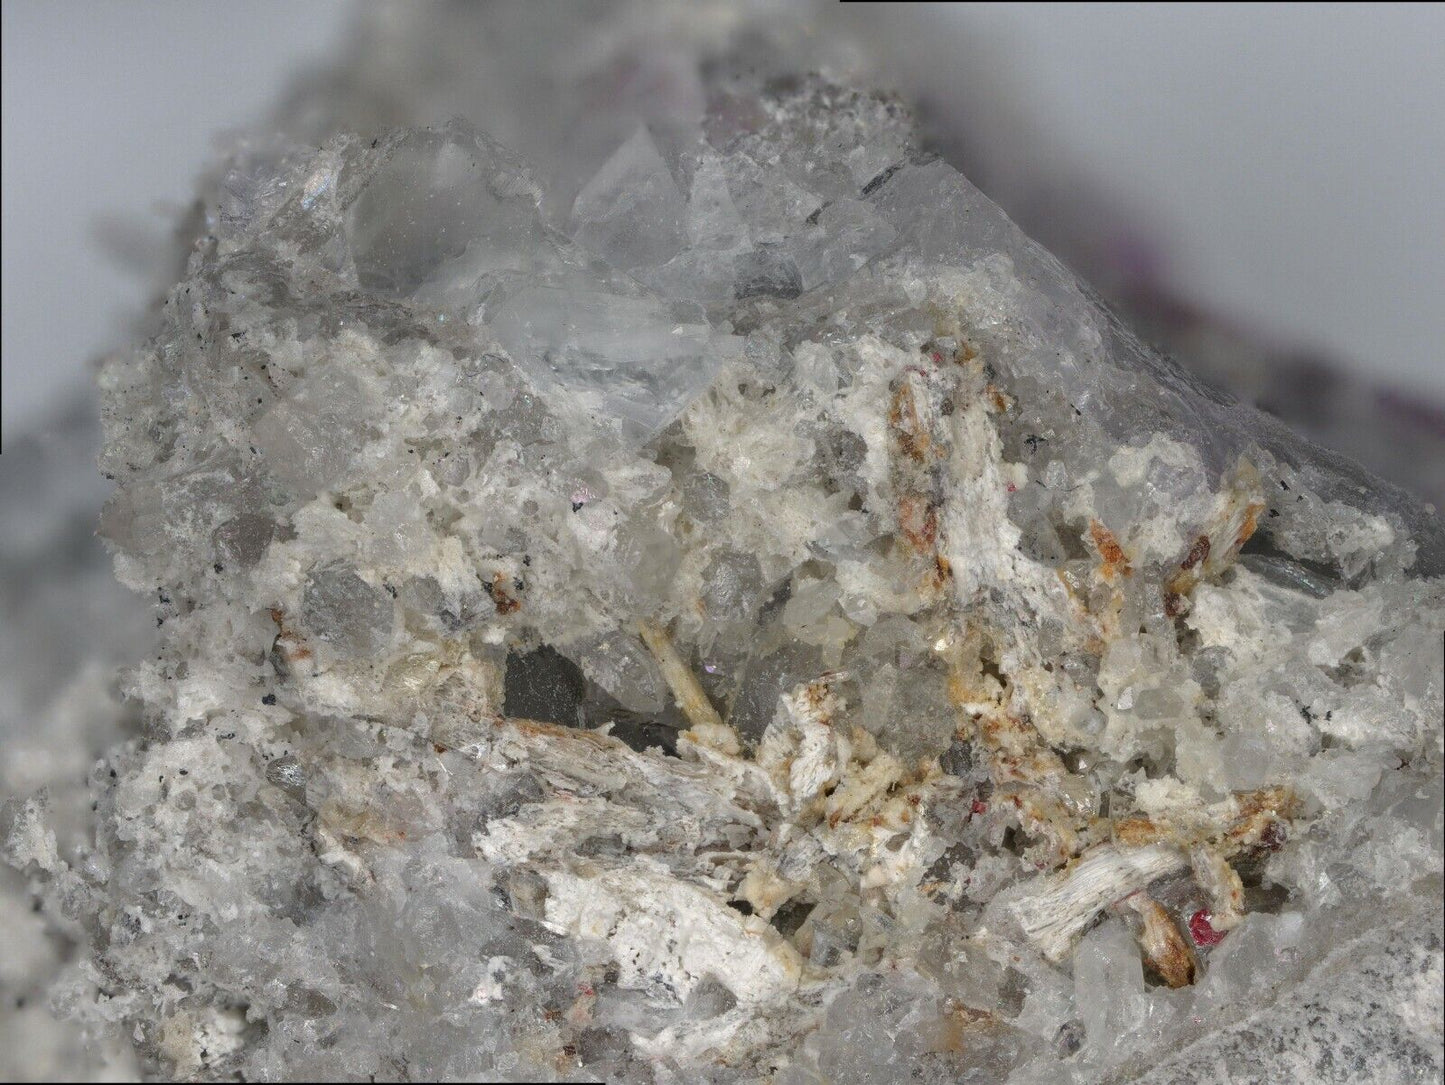 Hydroxycalcioromeite Khaidarkan Sb-Hg, Khaidarkan, Kyrgyzstan XRD &EDX